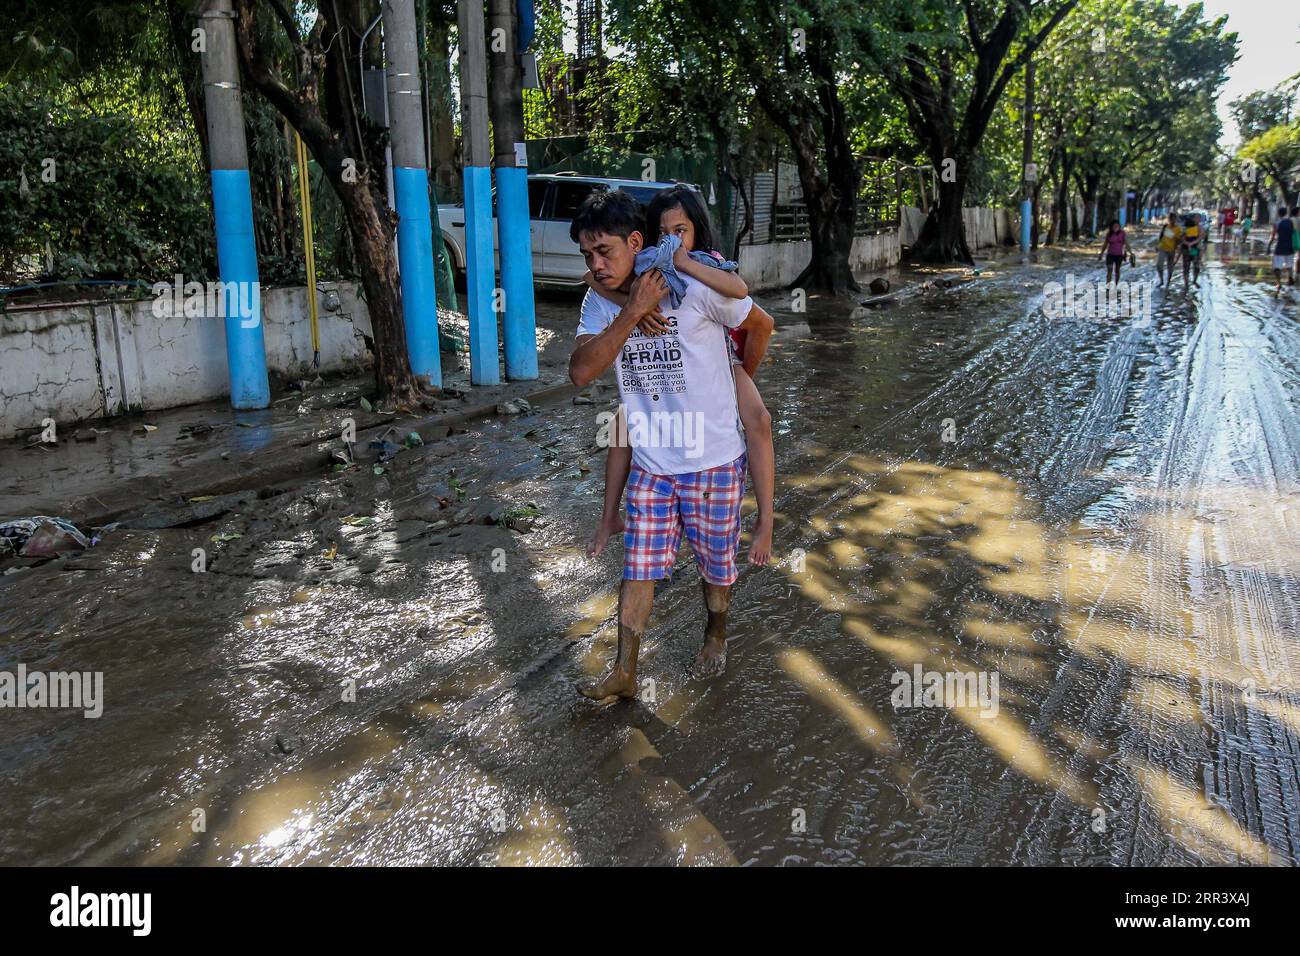 201113 -- MANILLE, le 13 novembre 2020 -- Un homme porte sa fille alors qu'il marche sur une route boueuse après l'inondation provoquée par le typhon Vamco à Manille, aux Philippines, le 13 novembre 2020. Le gouvernement philippin a déclaré vendredi que le typhon Vamco, qui a causé des inondations et des glissements de terrain dévastateurs dans l'île principale de Luçon, a tué au moins 14 personnes, ont déclaré les responsables. PHILIPPINES-TYPHON VAMCO-AFTERMATH ROUELLExUMALI PUBLICATIONxNOTxINxCHN Banque D'Images